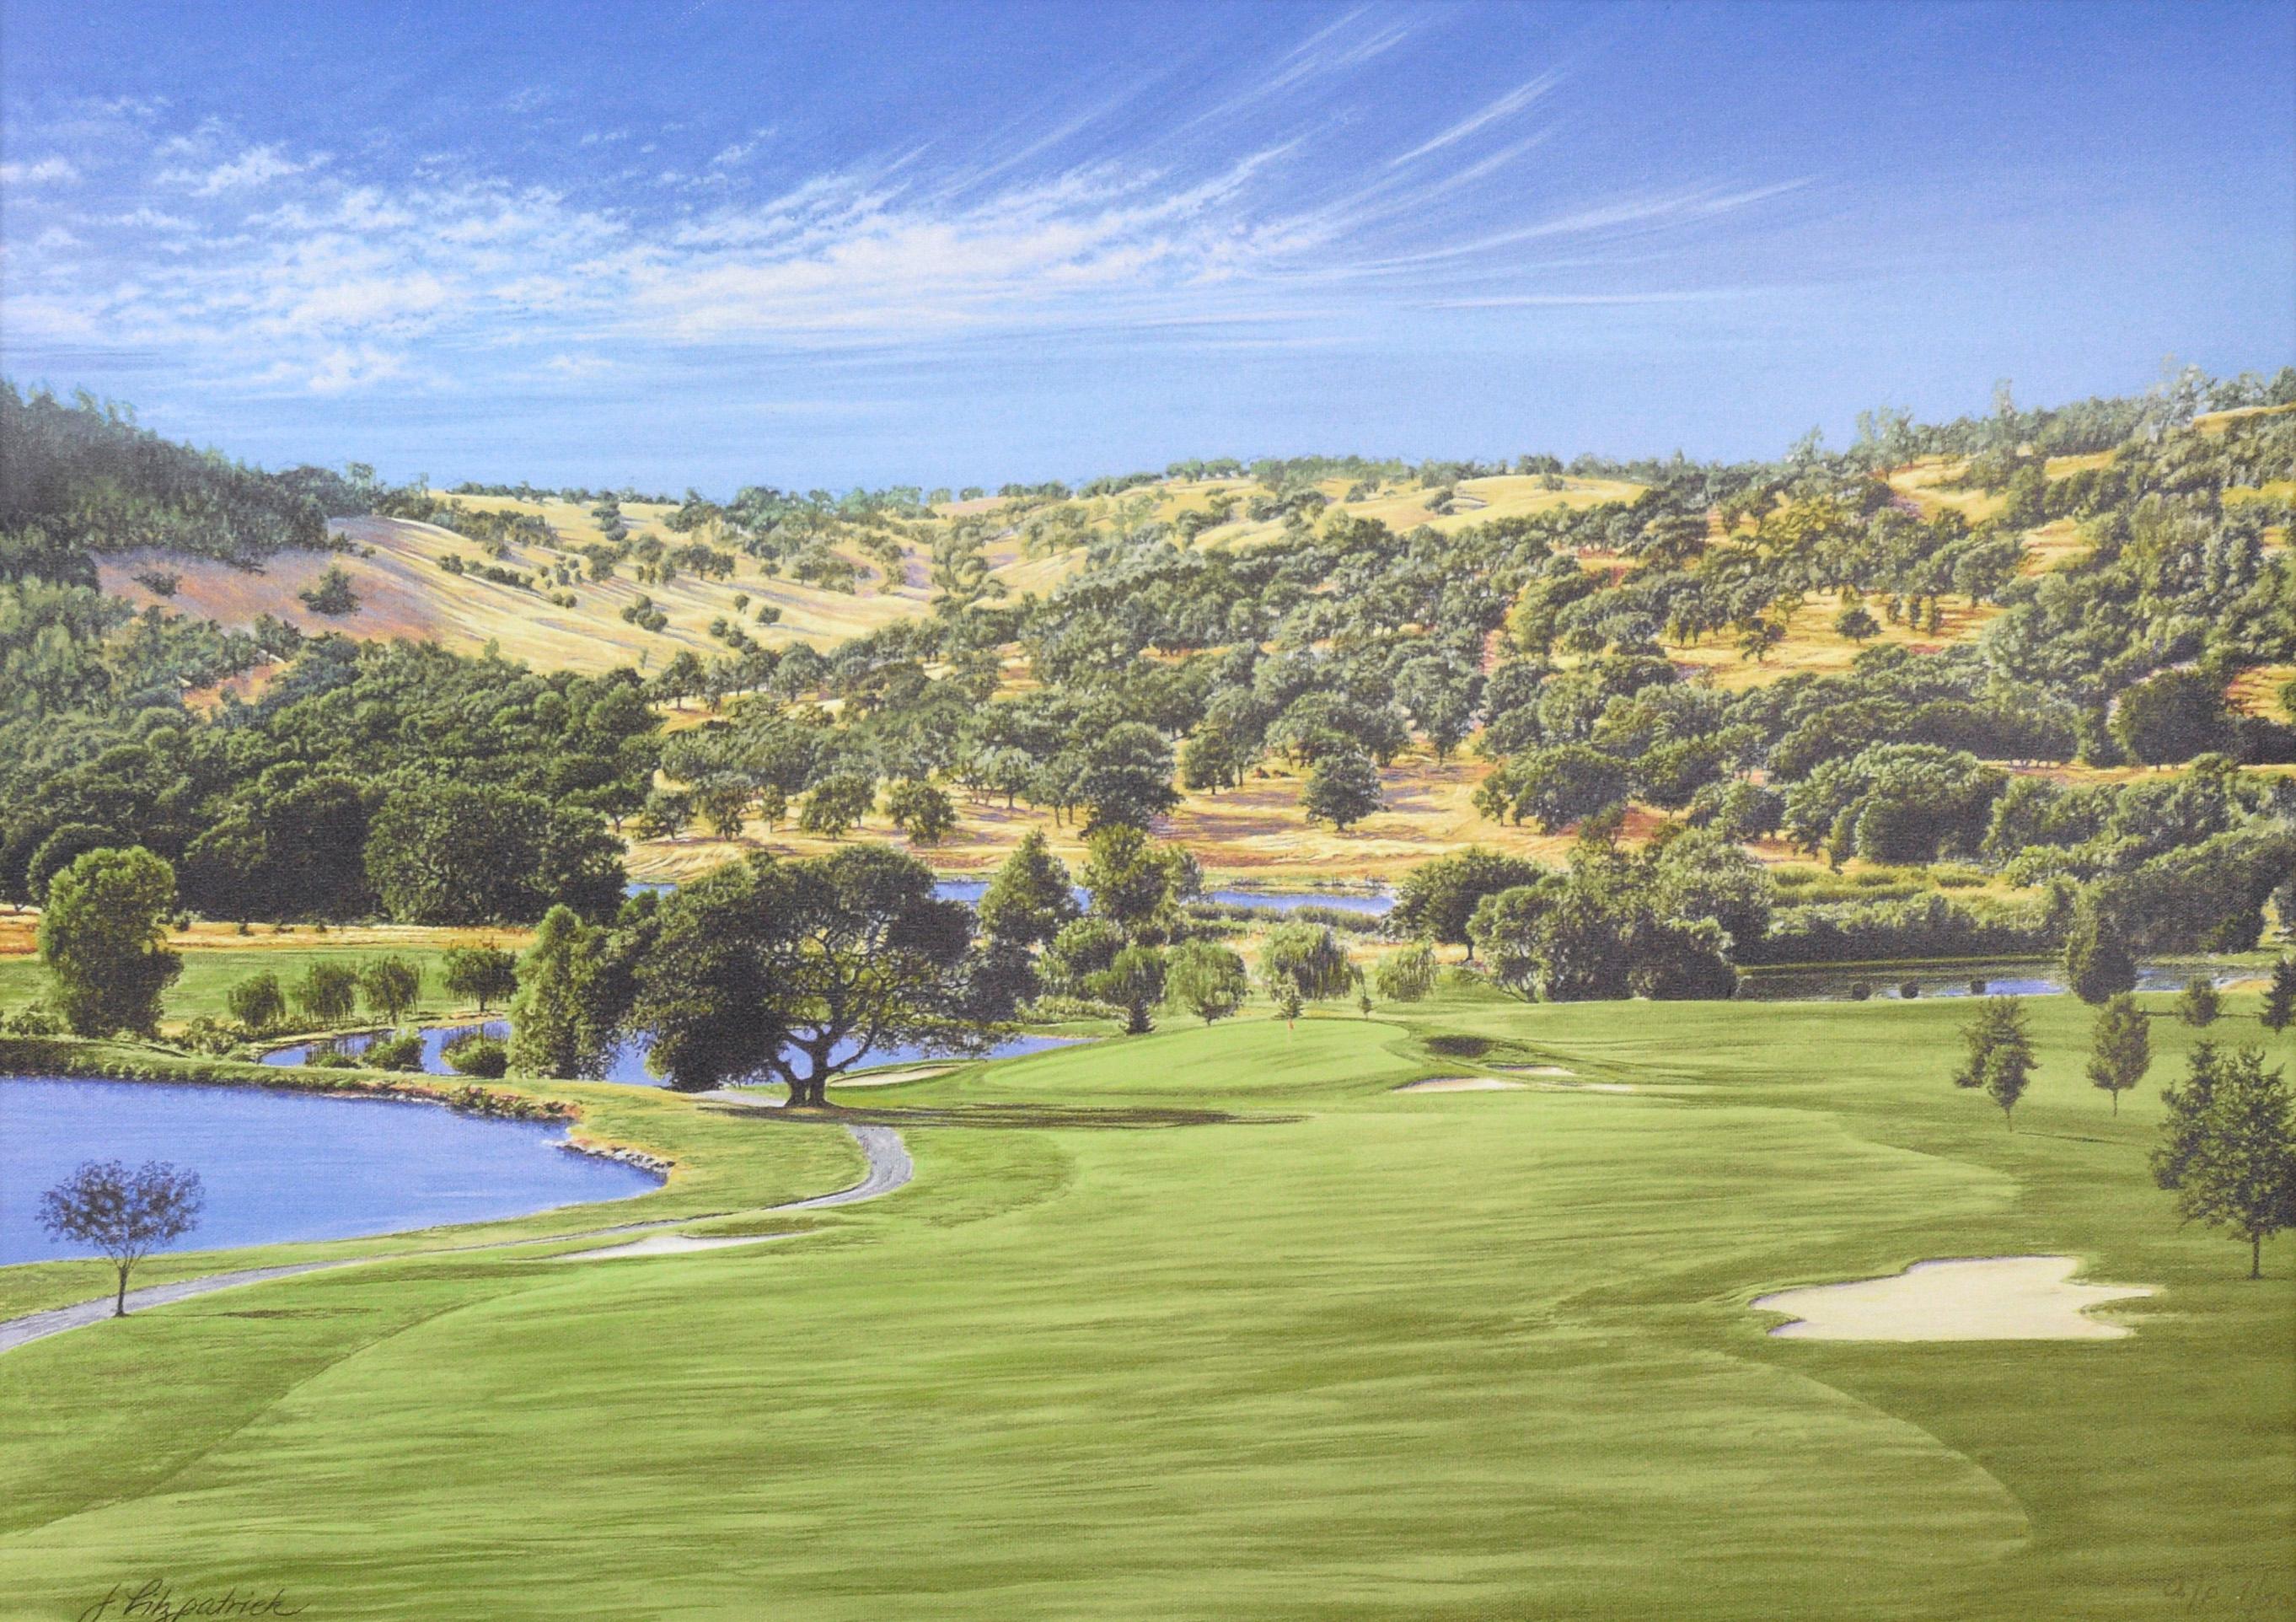 The Tenth Hole at Auburn Valley Golf Course - AP, 1/50 - Giclée sur toile - Print de Jim Fitzpatrick